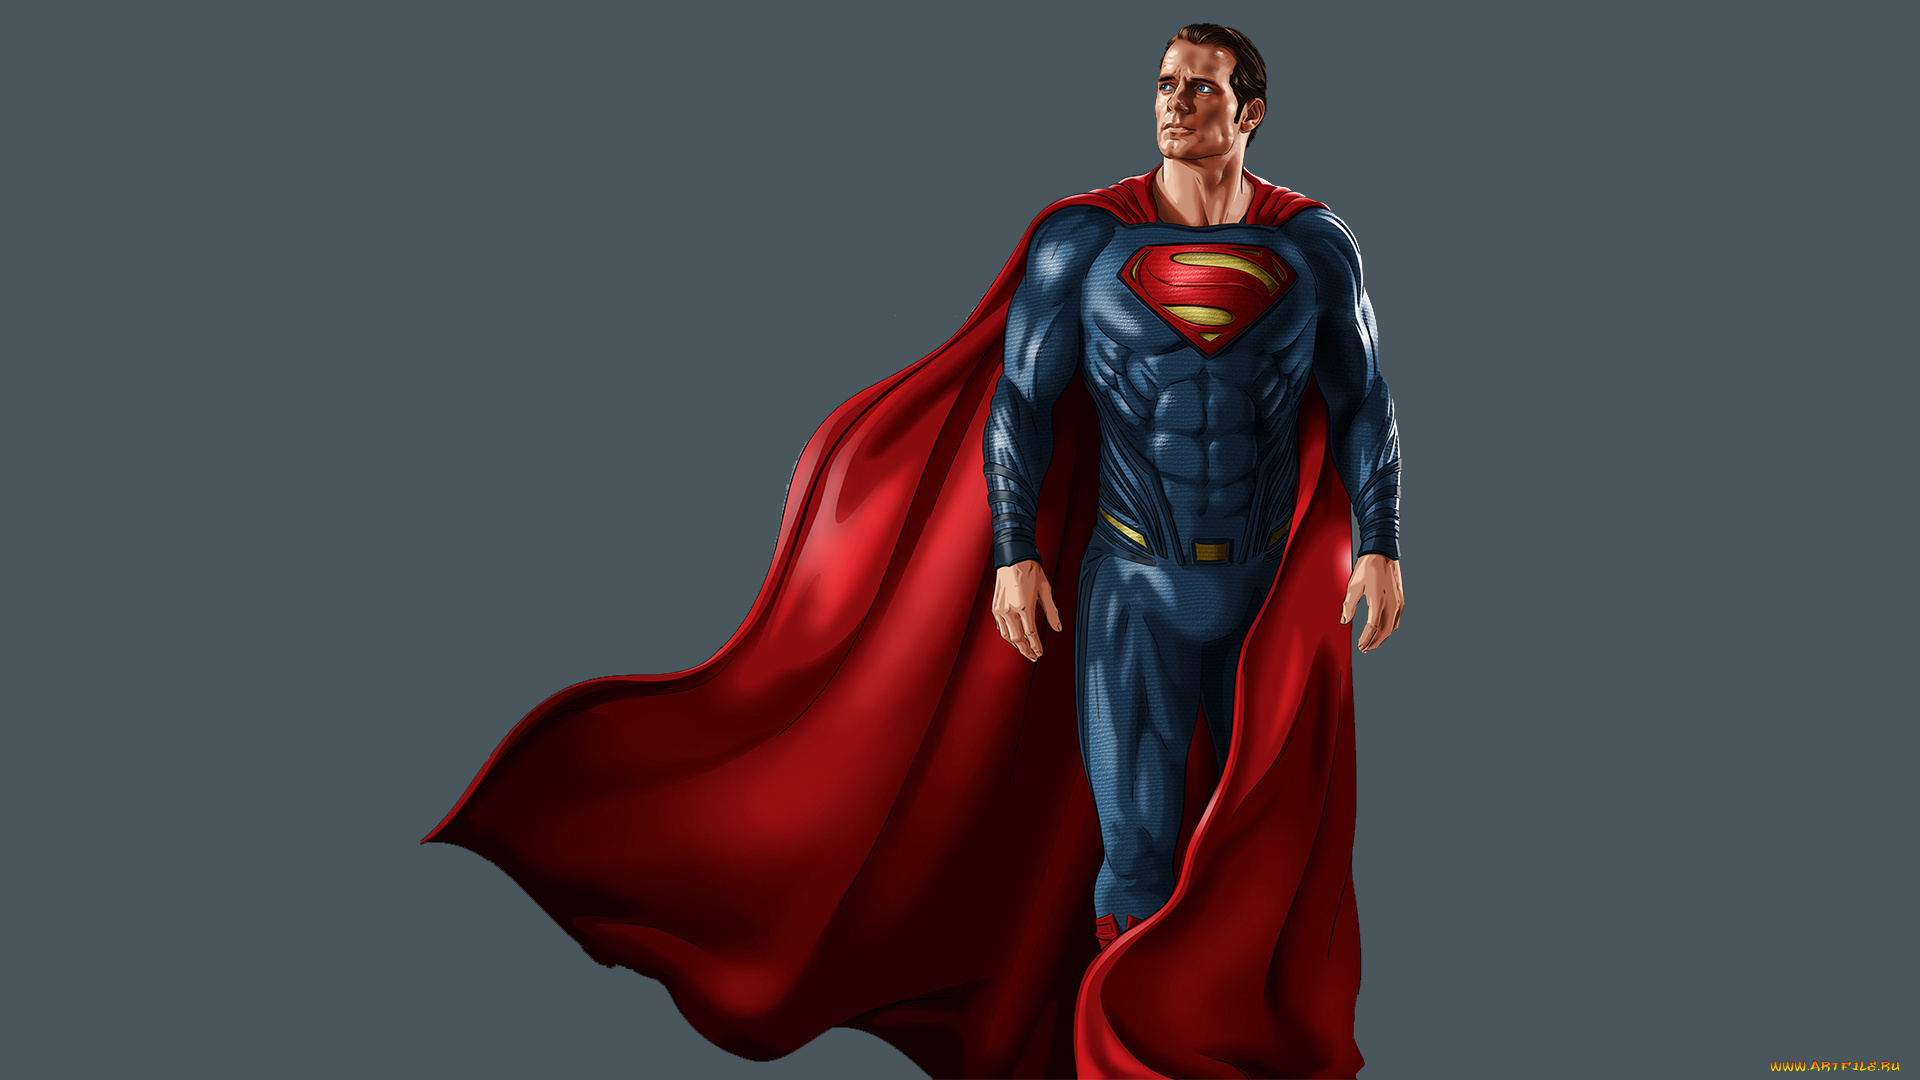 superman, amazing, artwork, рисованное, комиксы, рисунок, супермен, artwork, amazing, superman